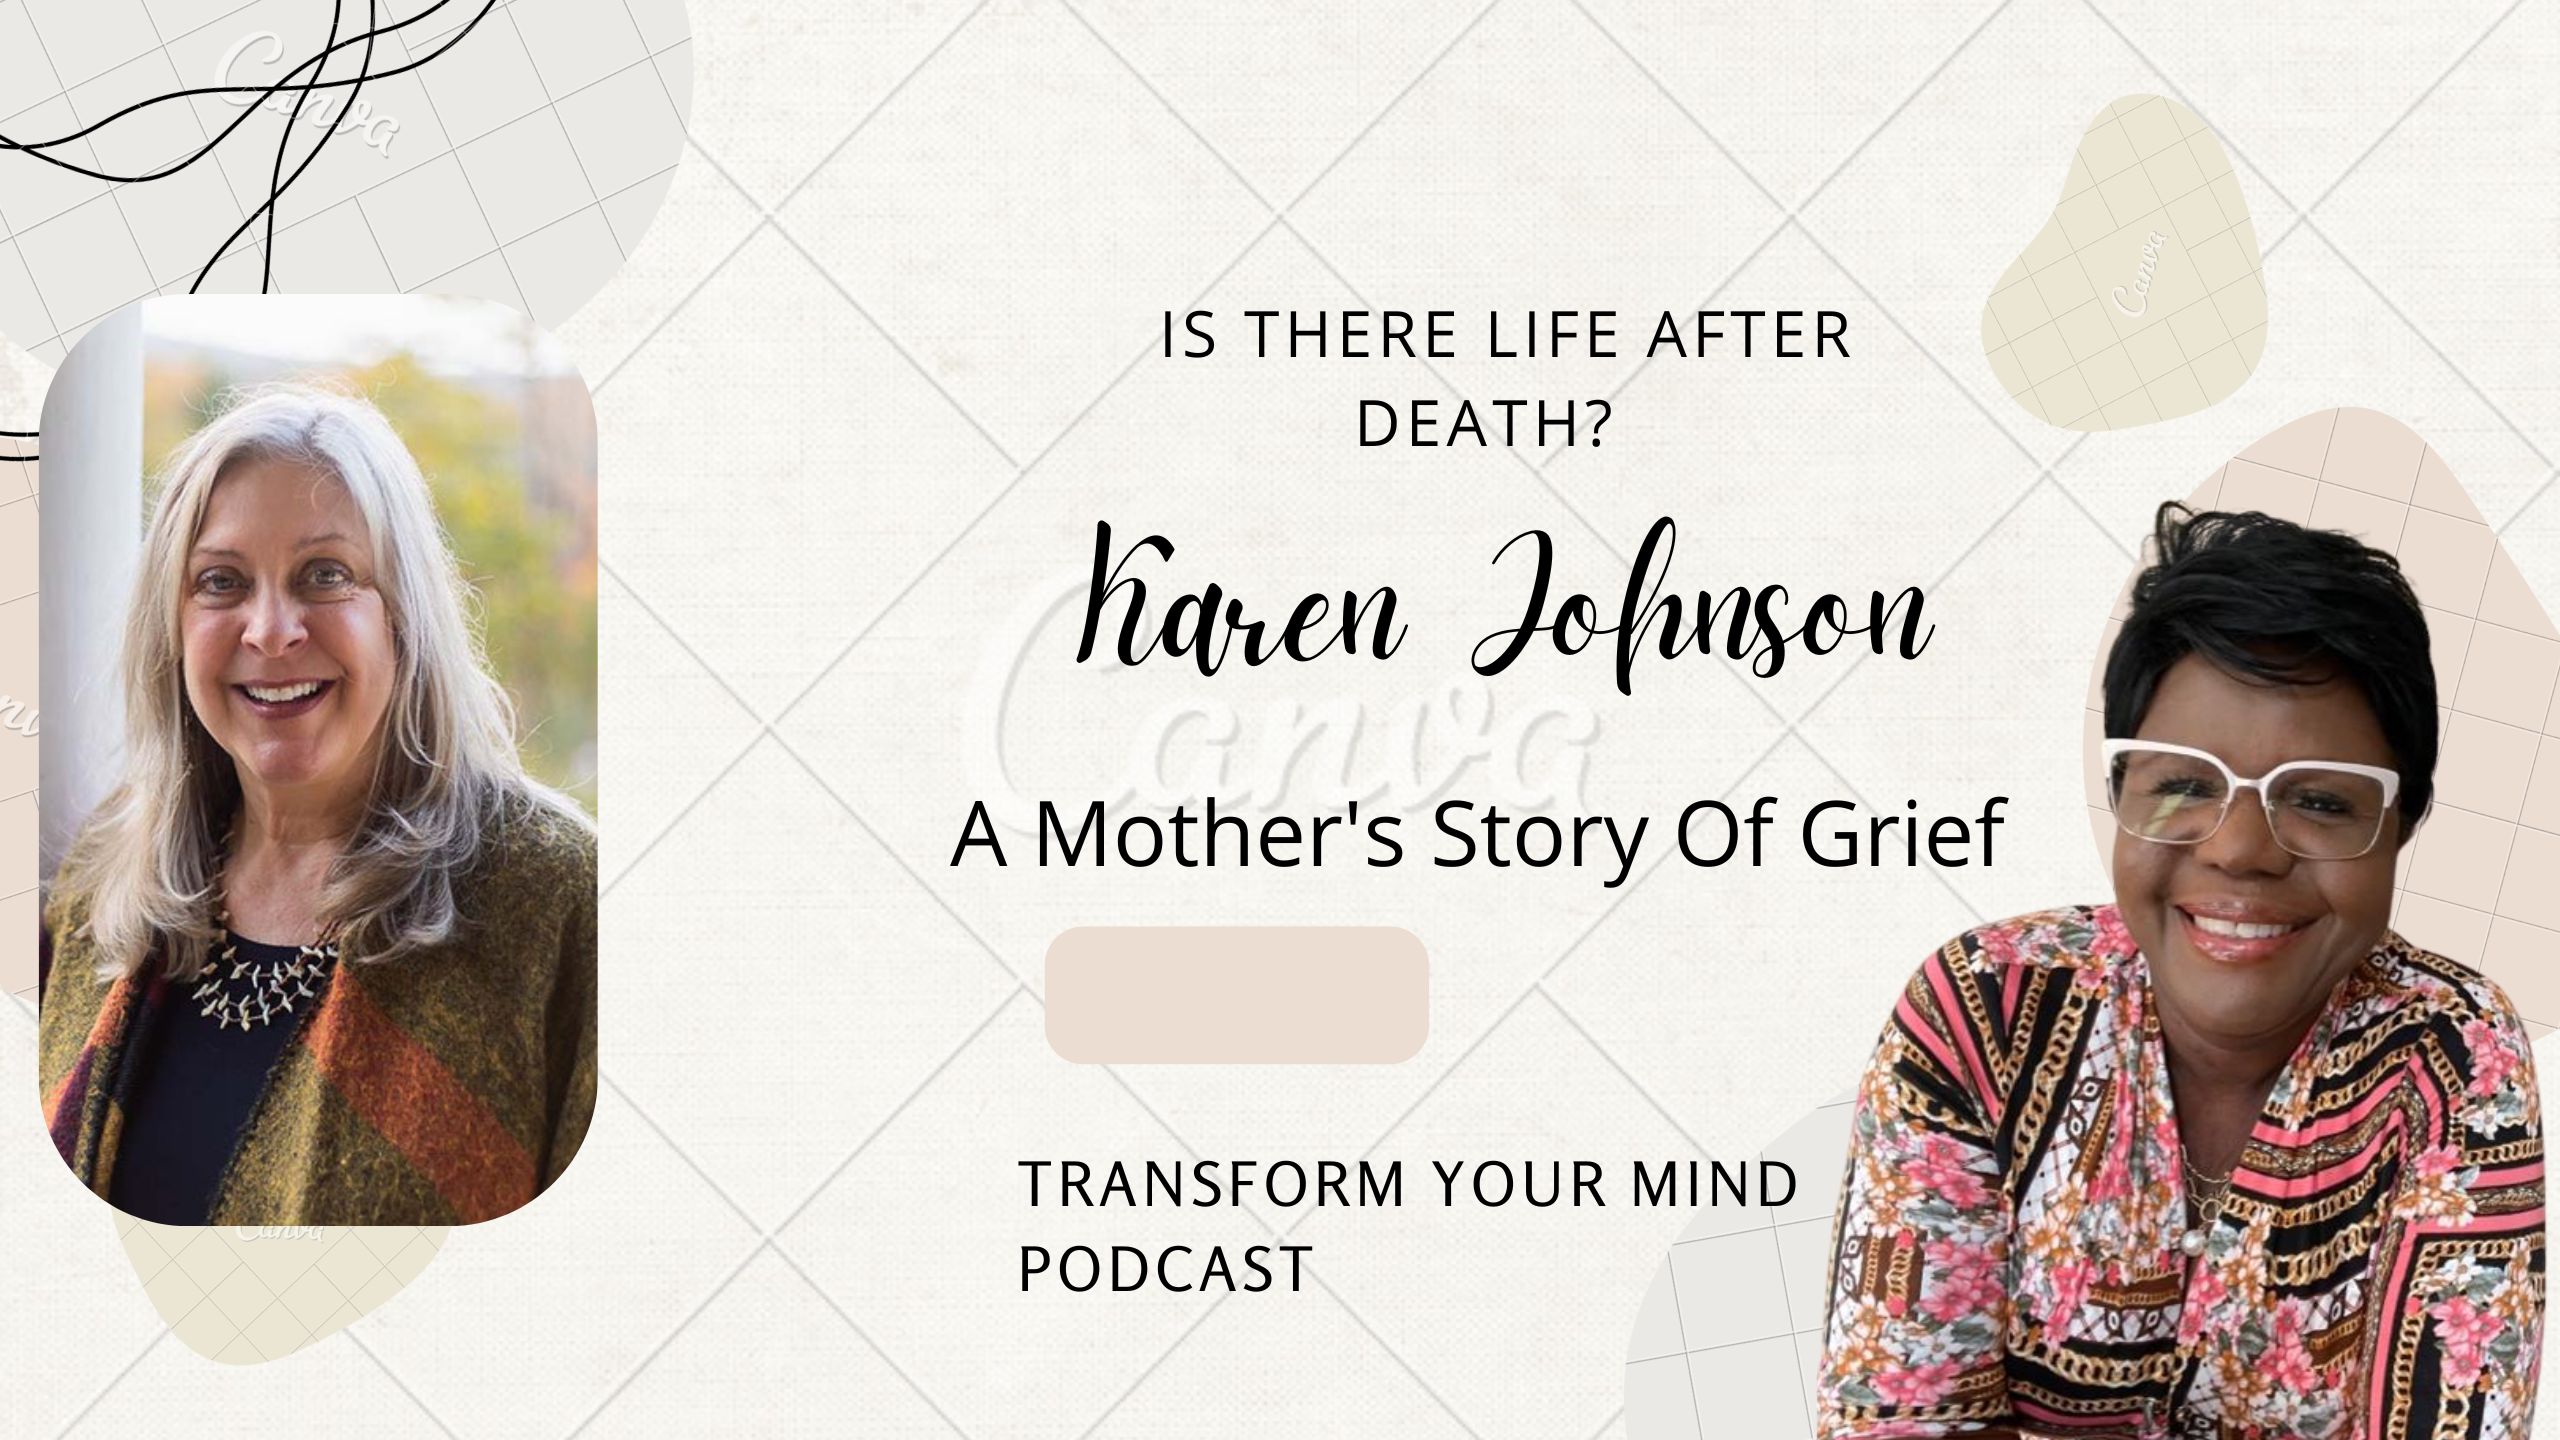 Karen Johnson on life after death